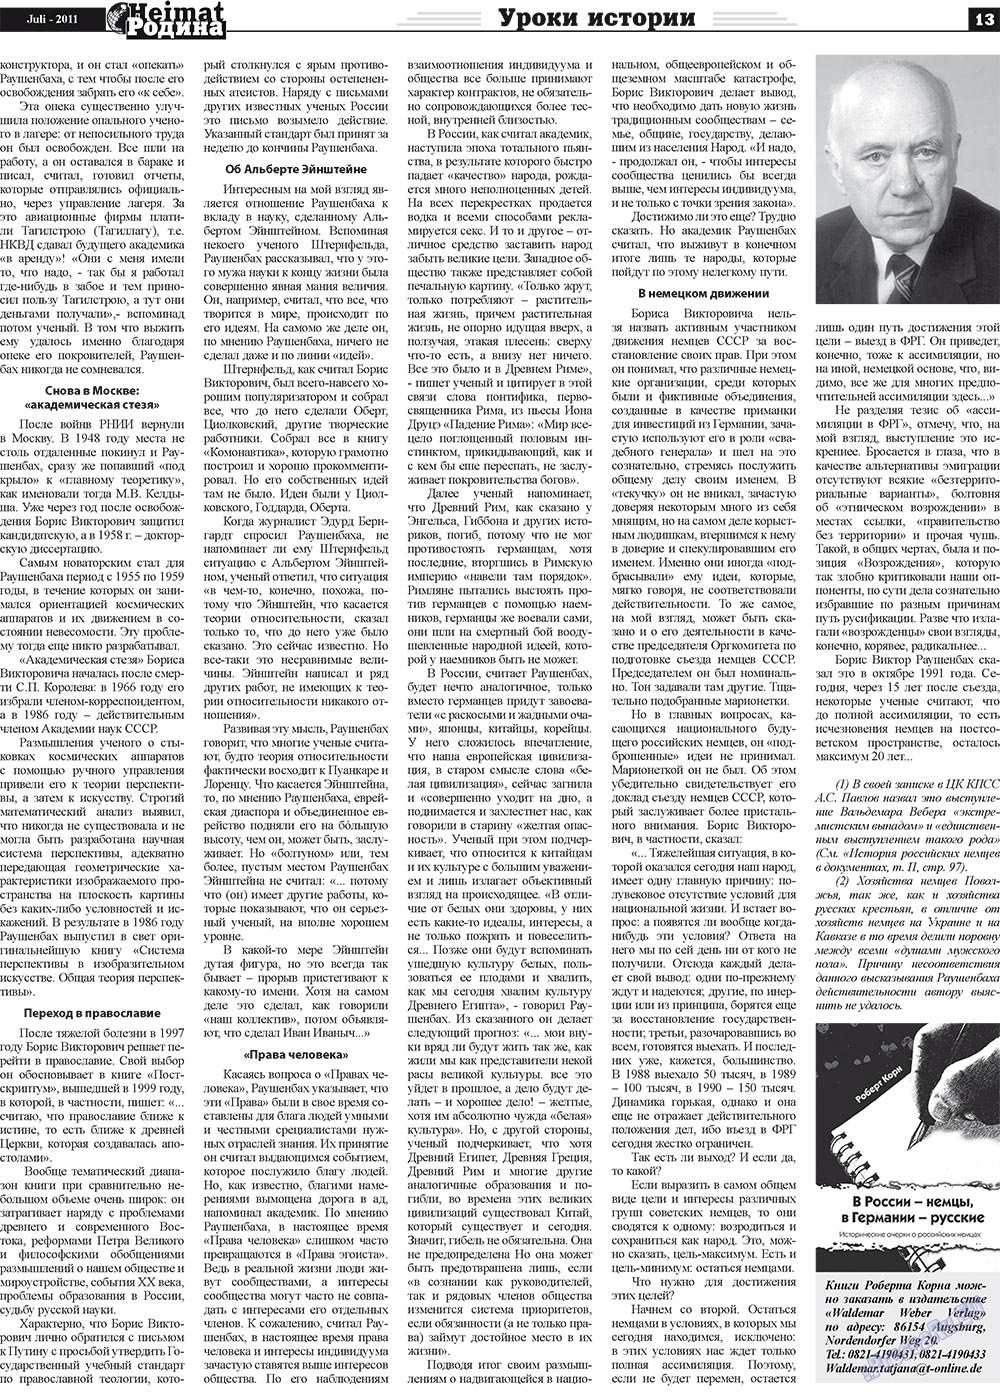 Heimat-Родина (газета). 2011 год, номер 7, стр. 13